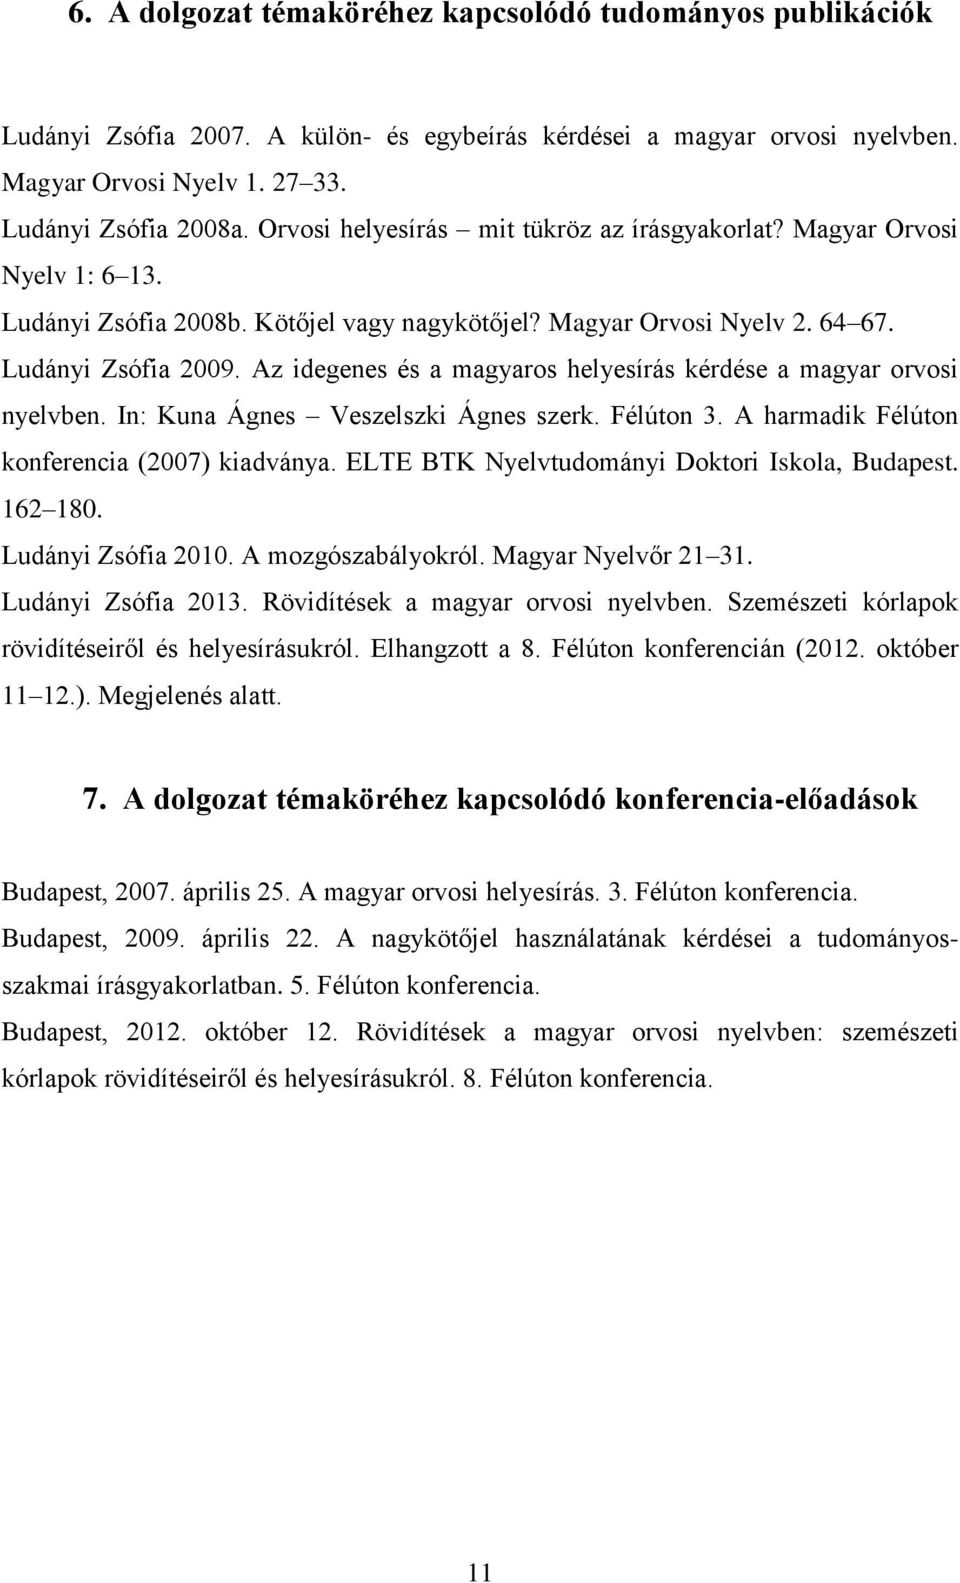 Az idegenes és a magyaros helyesírás kérdése a magyar orvosi nyelvben. In: Kuna Ágnes Veszelszki Ágnes szerk. Félúton 3. A harmadik Félúton konferencia (2007) kiadványa.